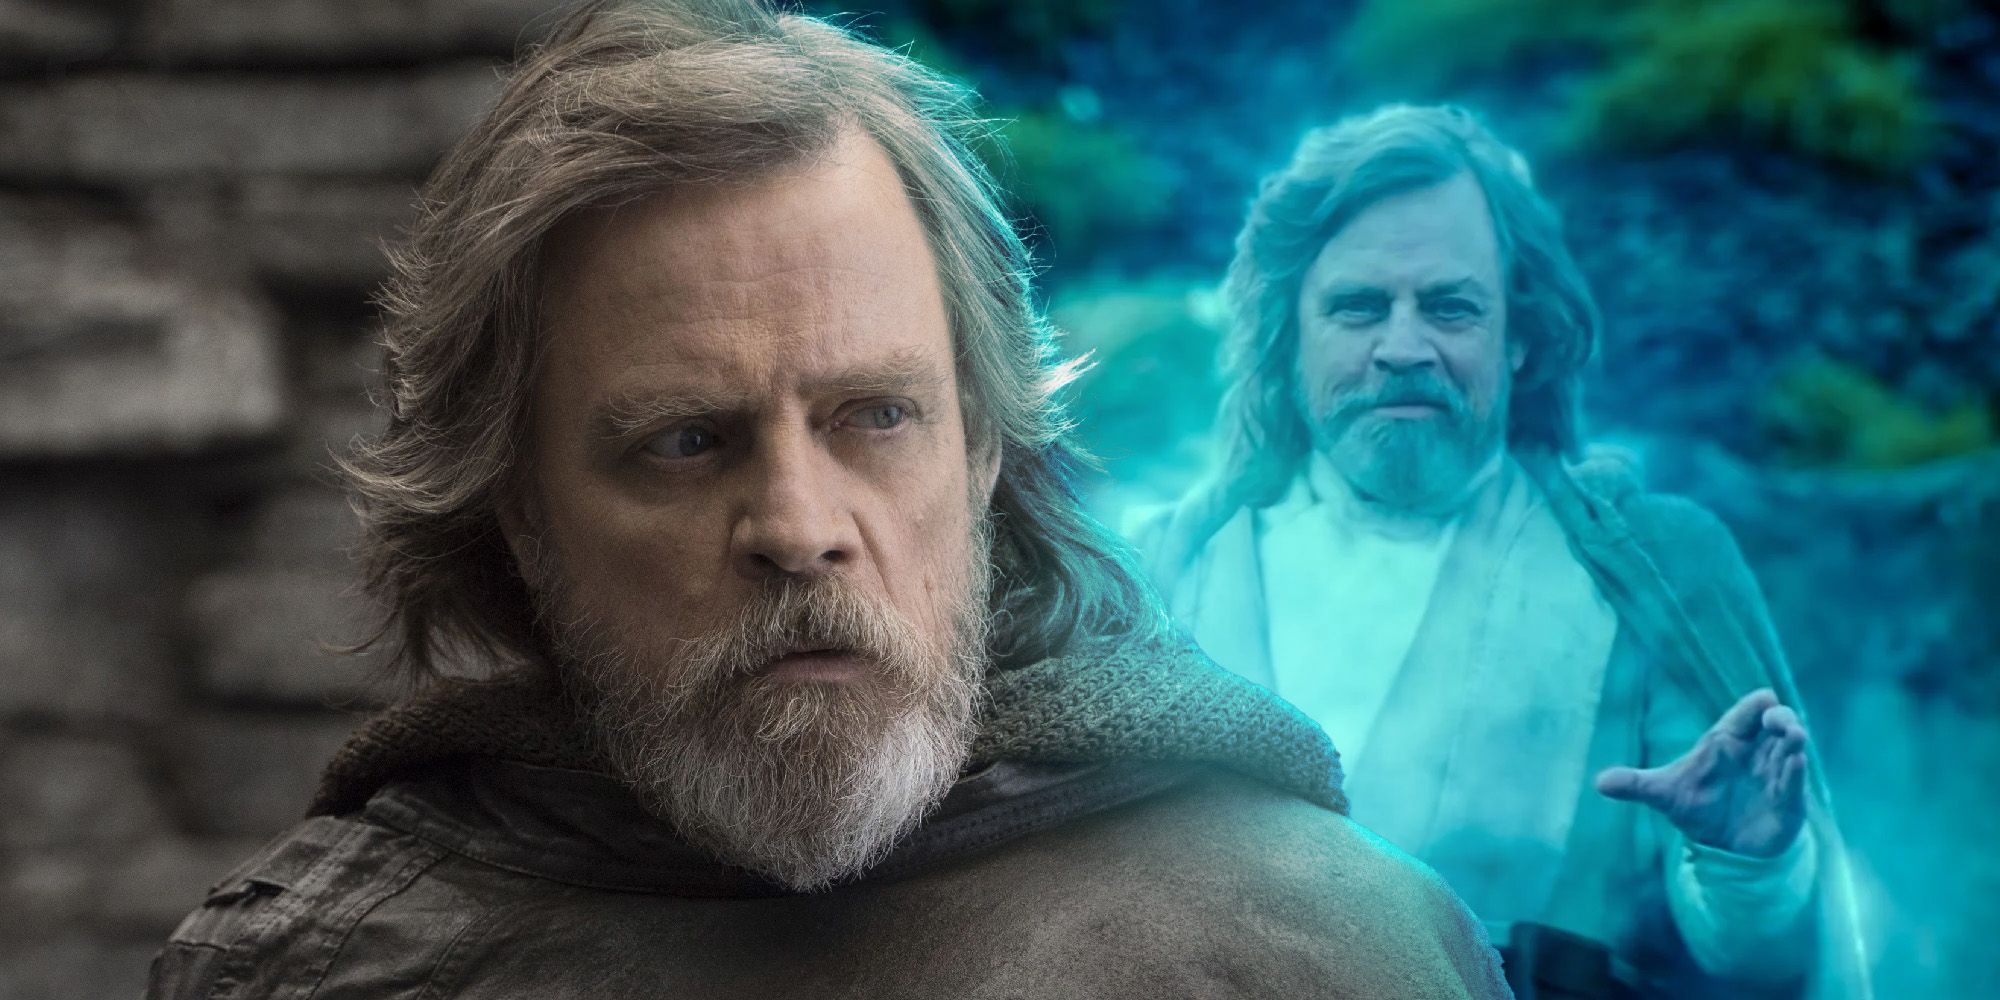 El ascenso de Skywalker hizo a Luke aún más desagradable que el último Jedi